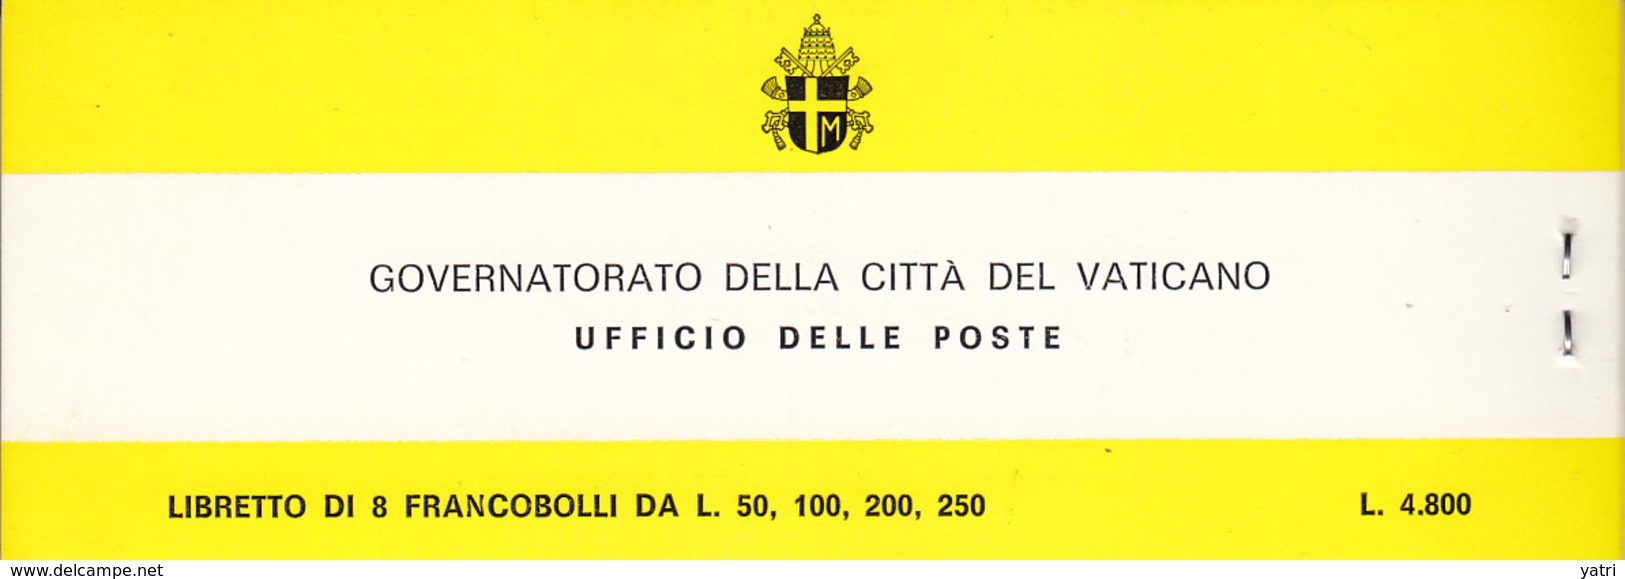 Vaticano - I Viaggi di Giovanni Paolo II nel Mondo, con francobolli timbrati (raro in questo stato d'uso)